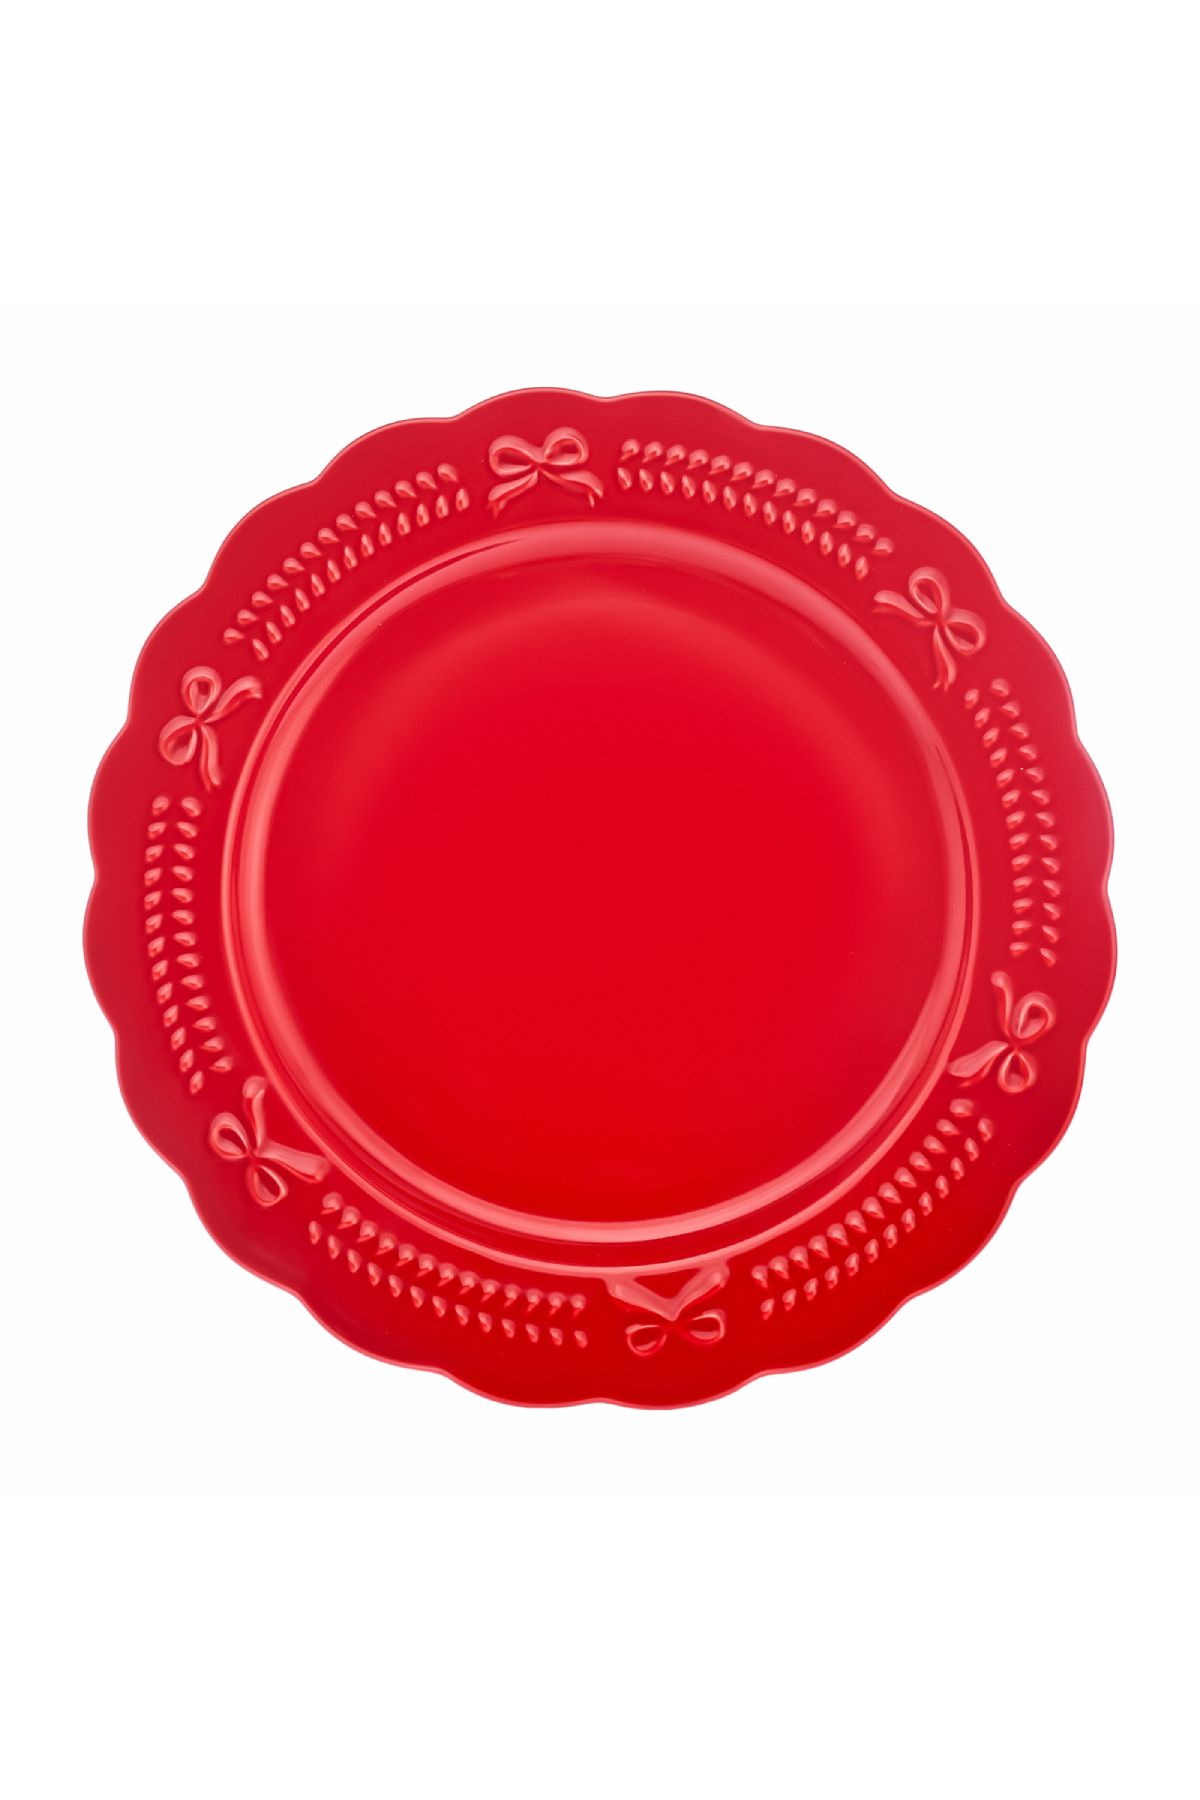 Karaca New Year Yılbaşı Rölyefli Servis Tabağı 27 Cm Kırmızı